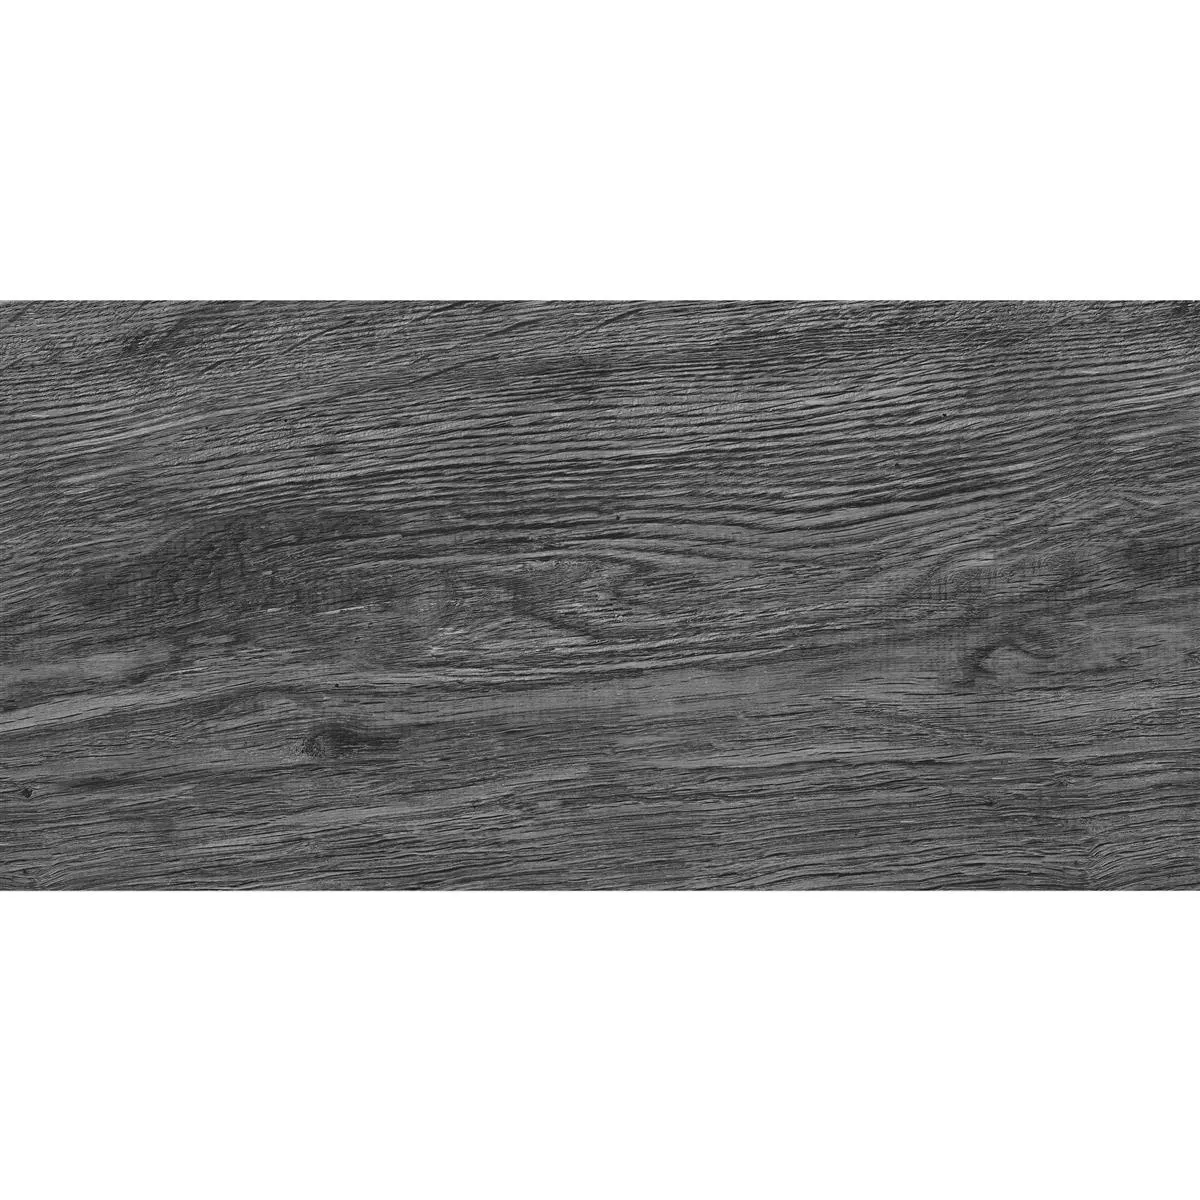 Próbka Płytki Podłogowe Goranboy Wygląd Drewna Shadow 30x60cm / R10